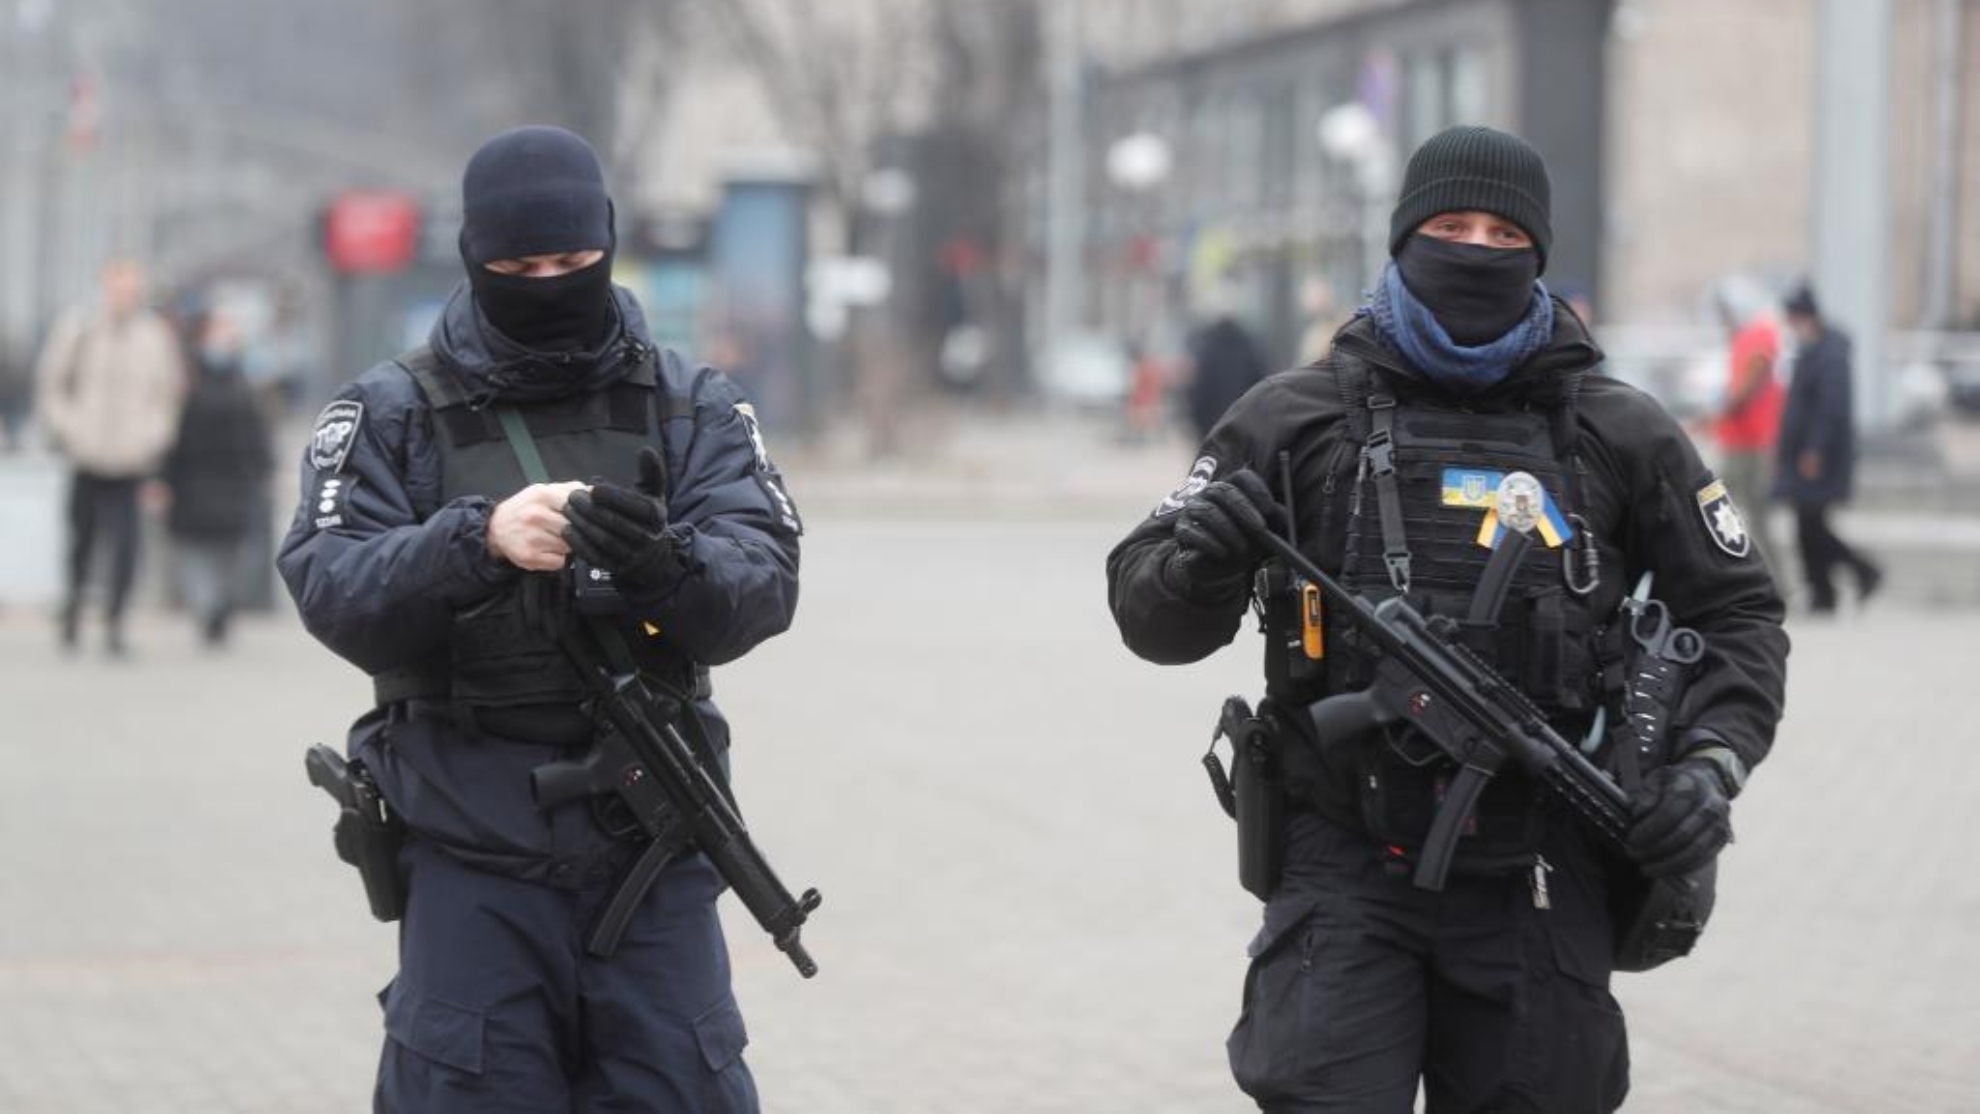 Ucrania - Rusia, ltima hora del conflicto en directo este sbado 19 de febrero.